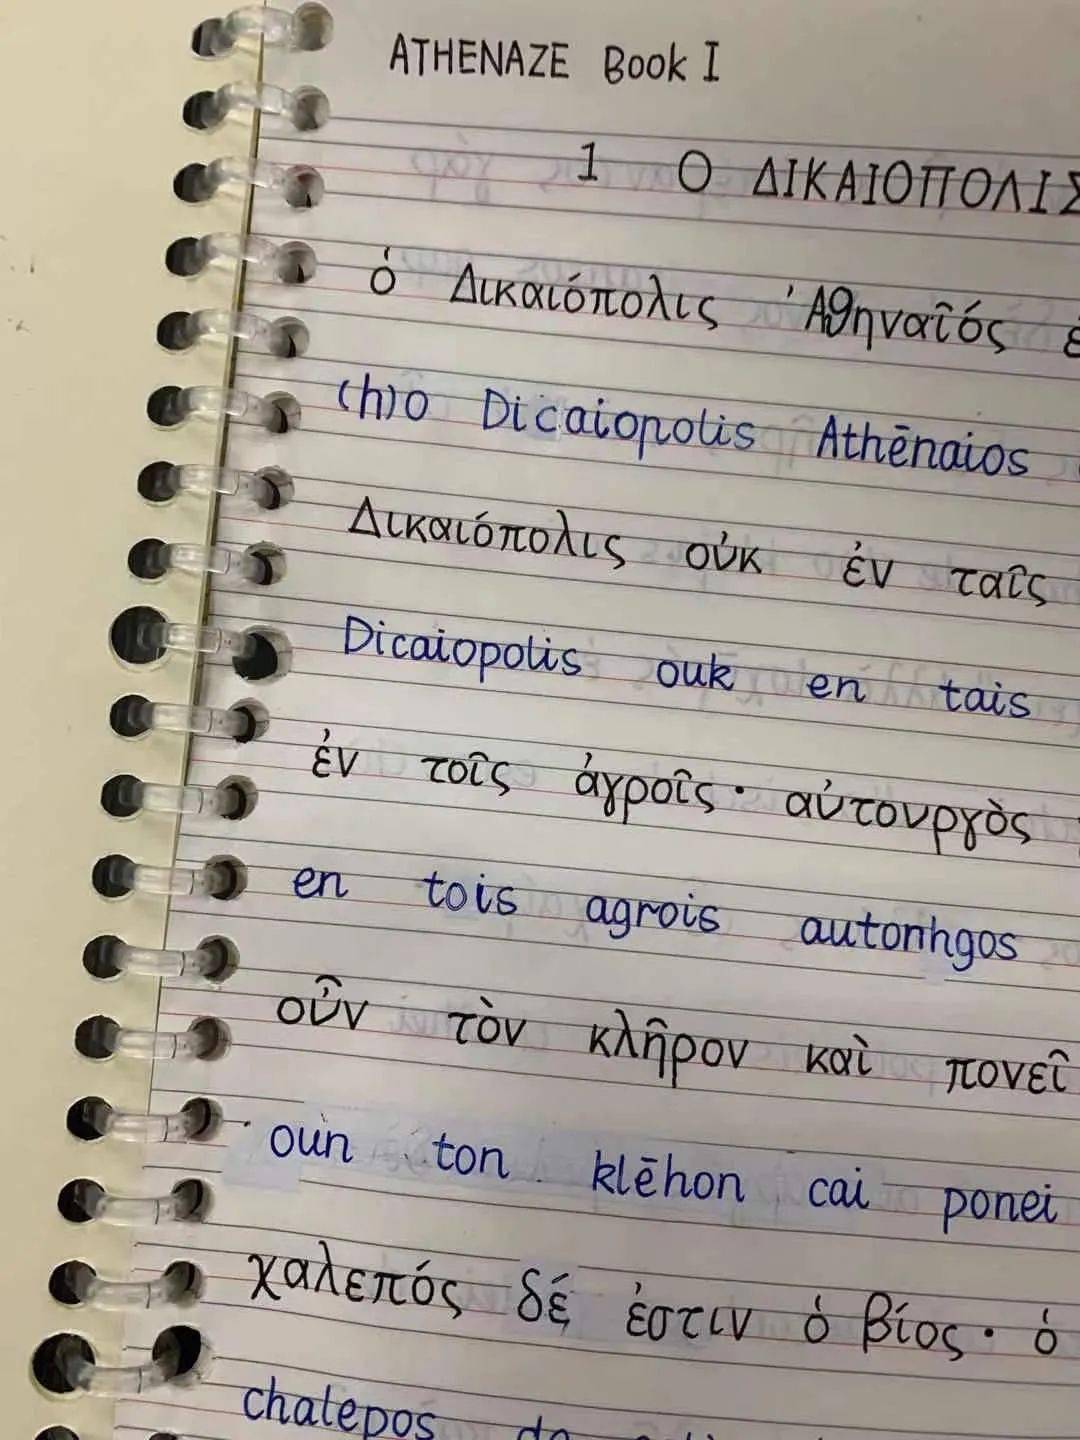 雅典娜古典希腊文二期教学公告一柏拉图美诺篇古希腊文原典精读的引入